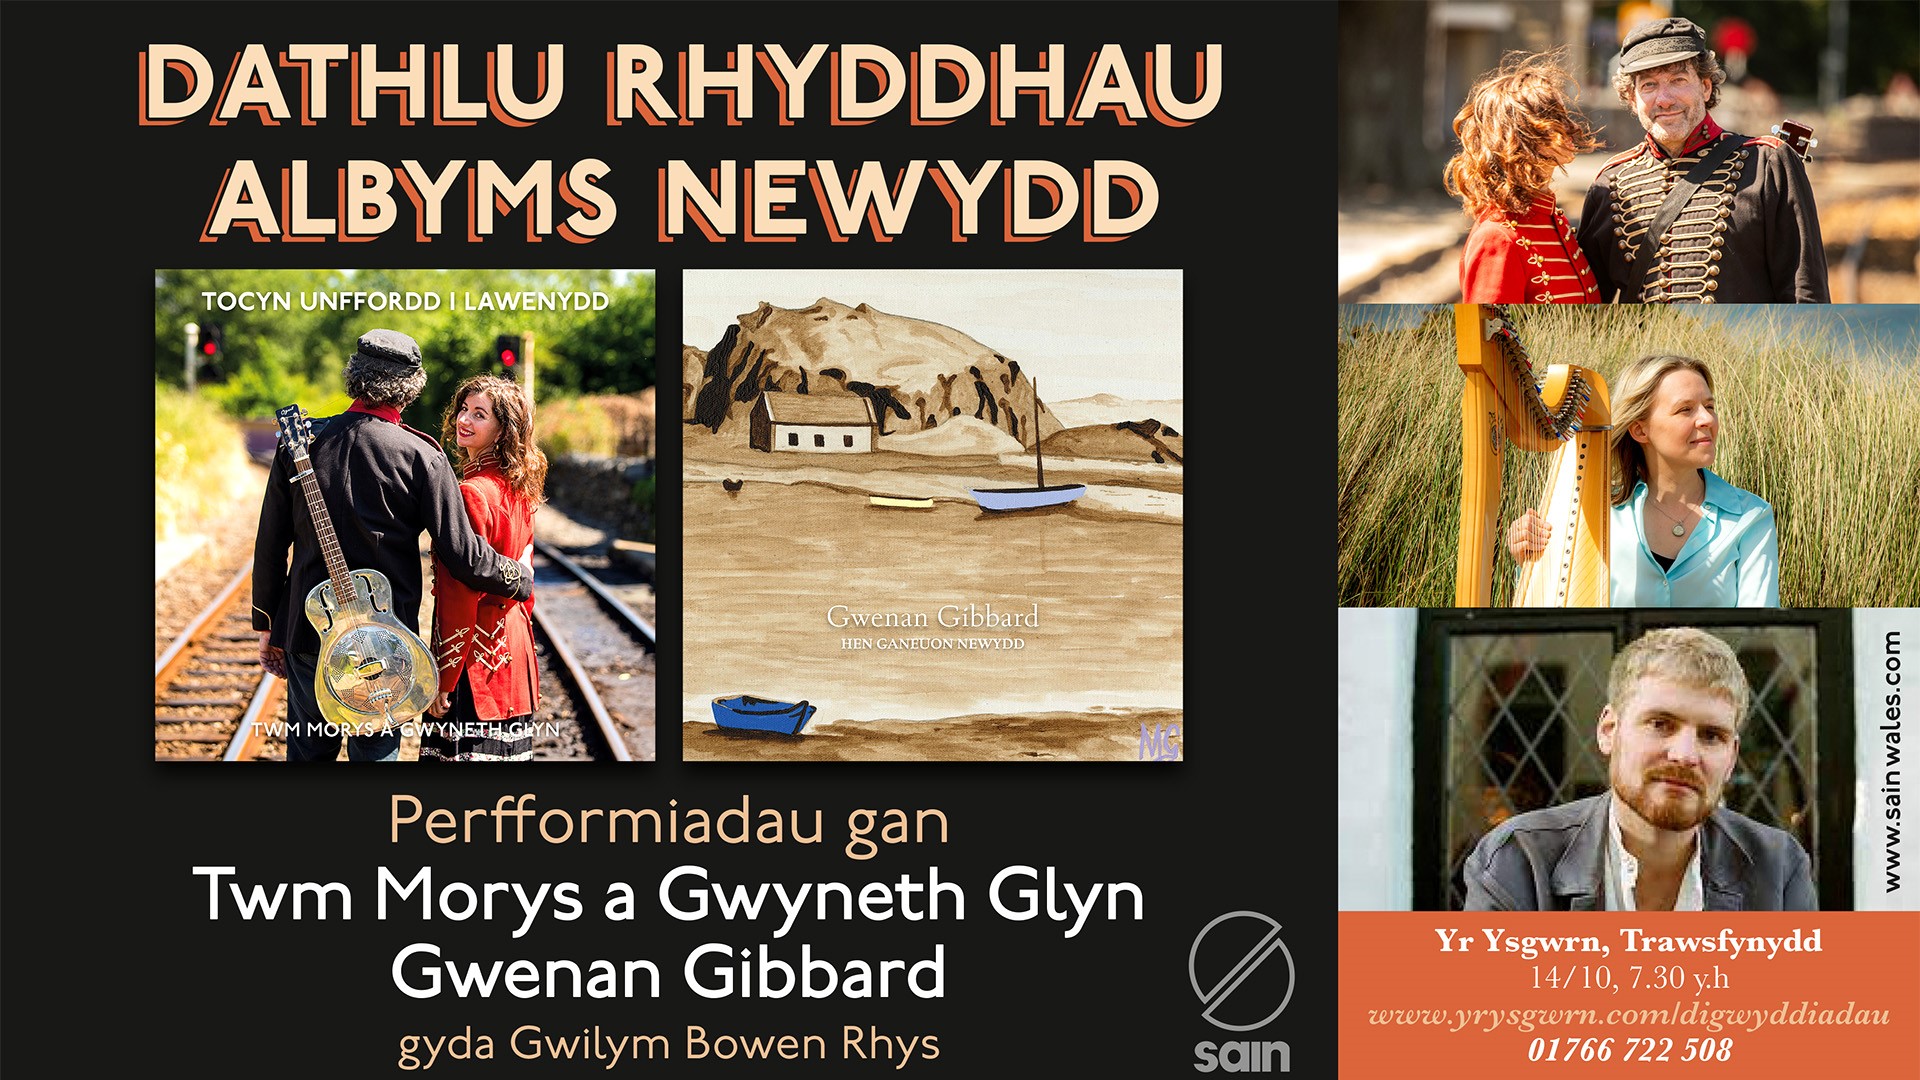 Twm Morys a Gwyneth Glyn, Gwenan Gibbard, Gwilym Bowen Rhys